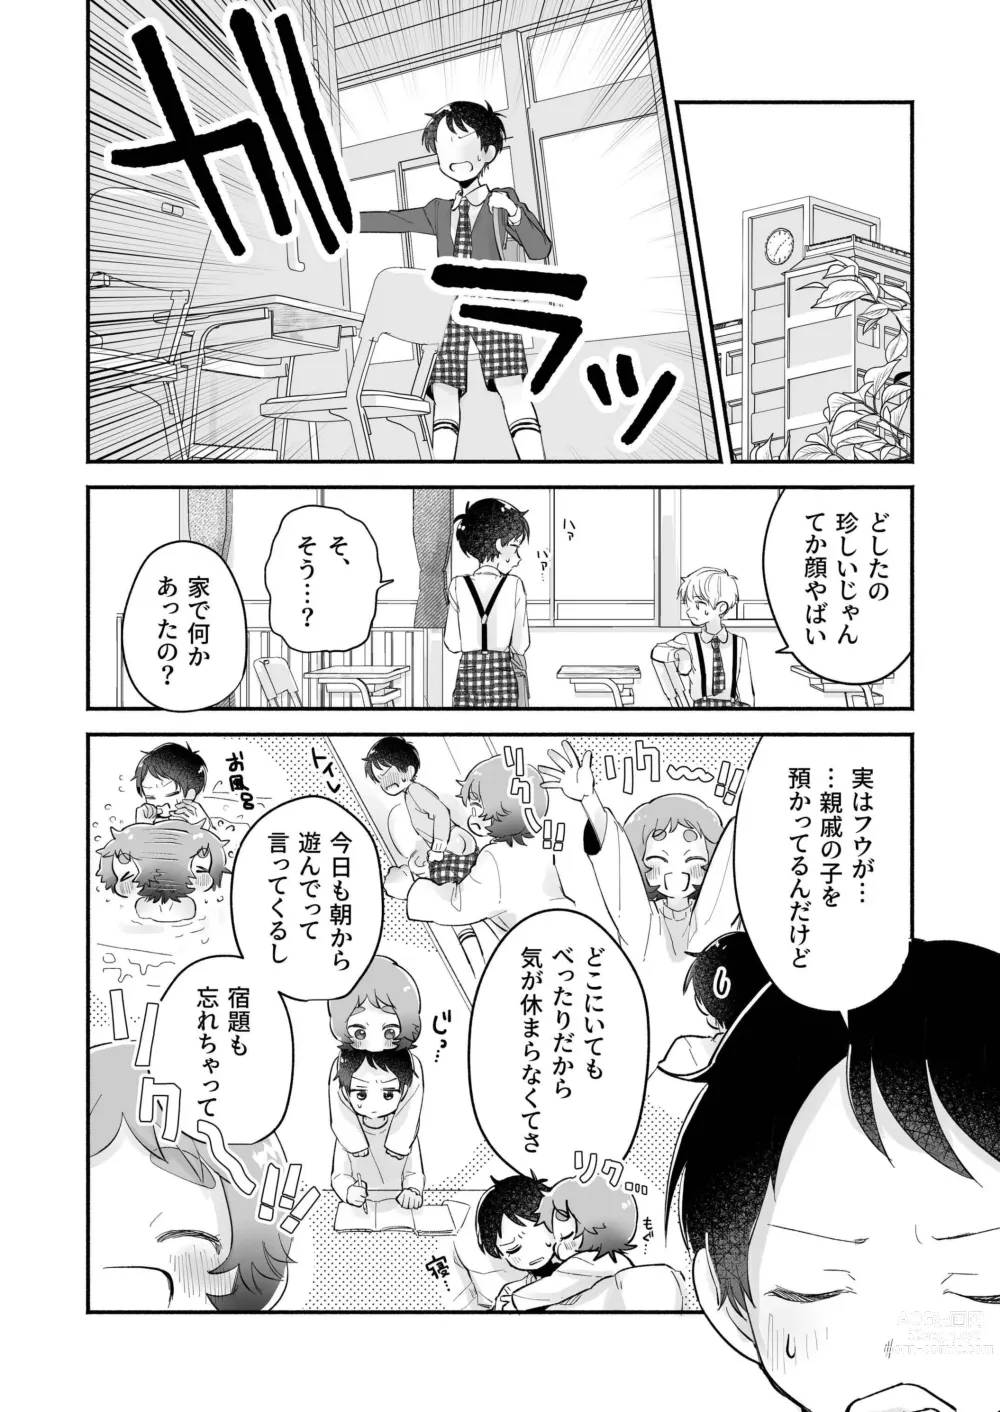 Page 14 of doujinshi Riku to Fuu Akachan Dekireba Kazoku ni Nareru no ka na